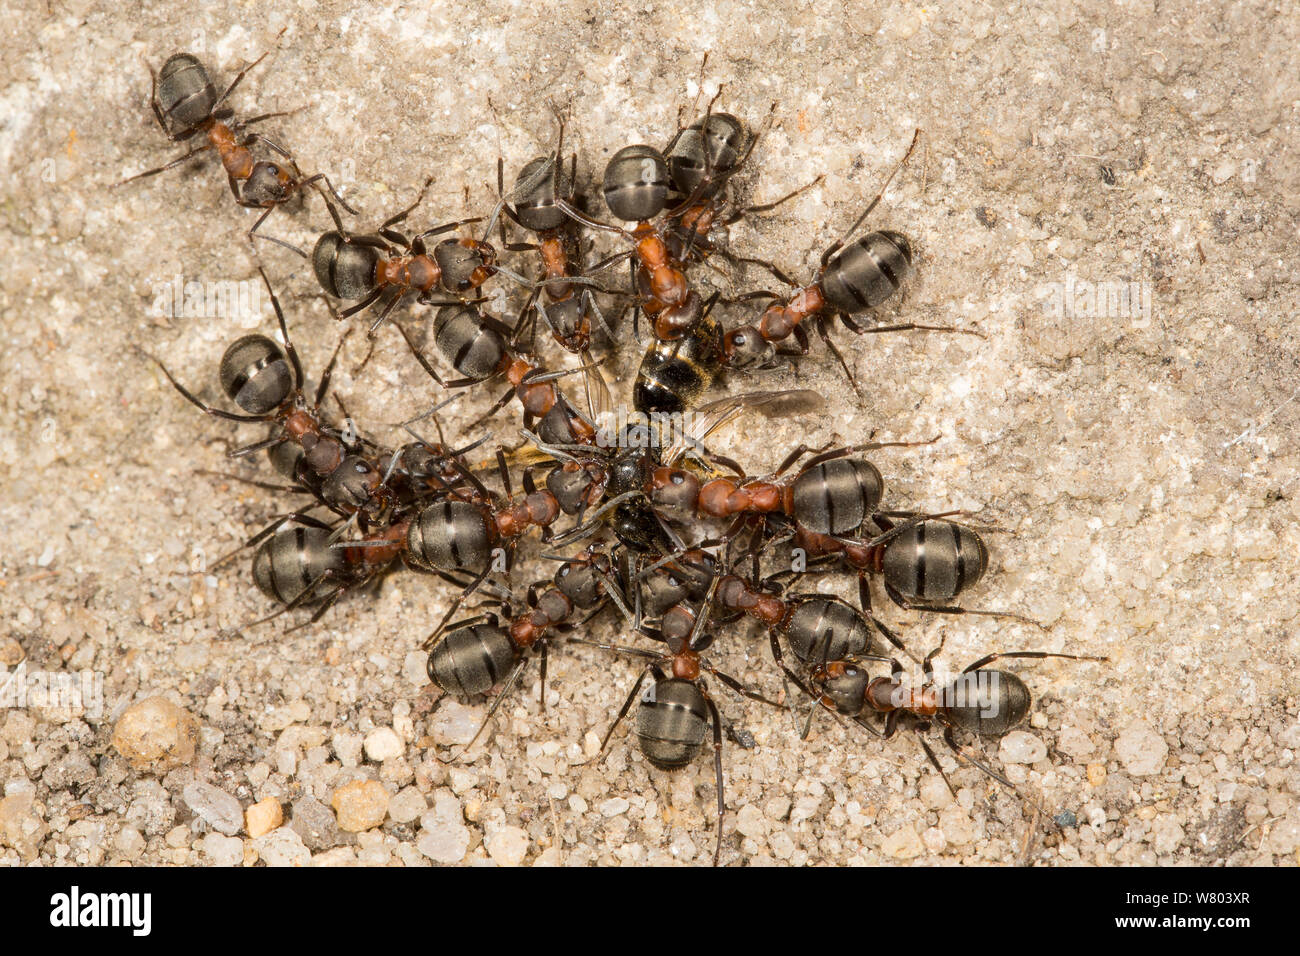 Las hormigas de madera peludo (Formica lugubris) desmembrar un minero de abeja. Derbyshire, Inglaterra, Reino Unido, Mayo. Foto de stock